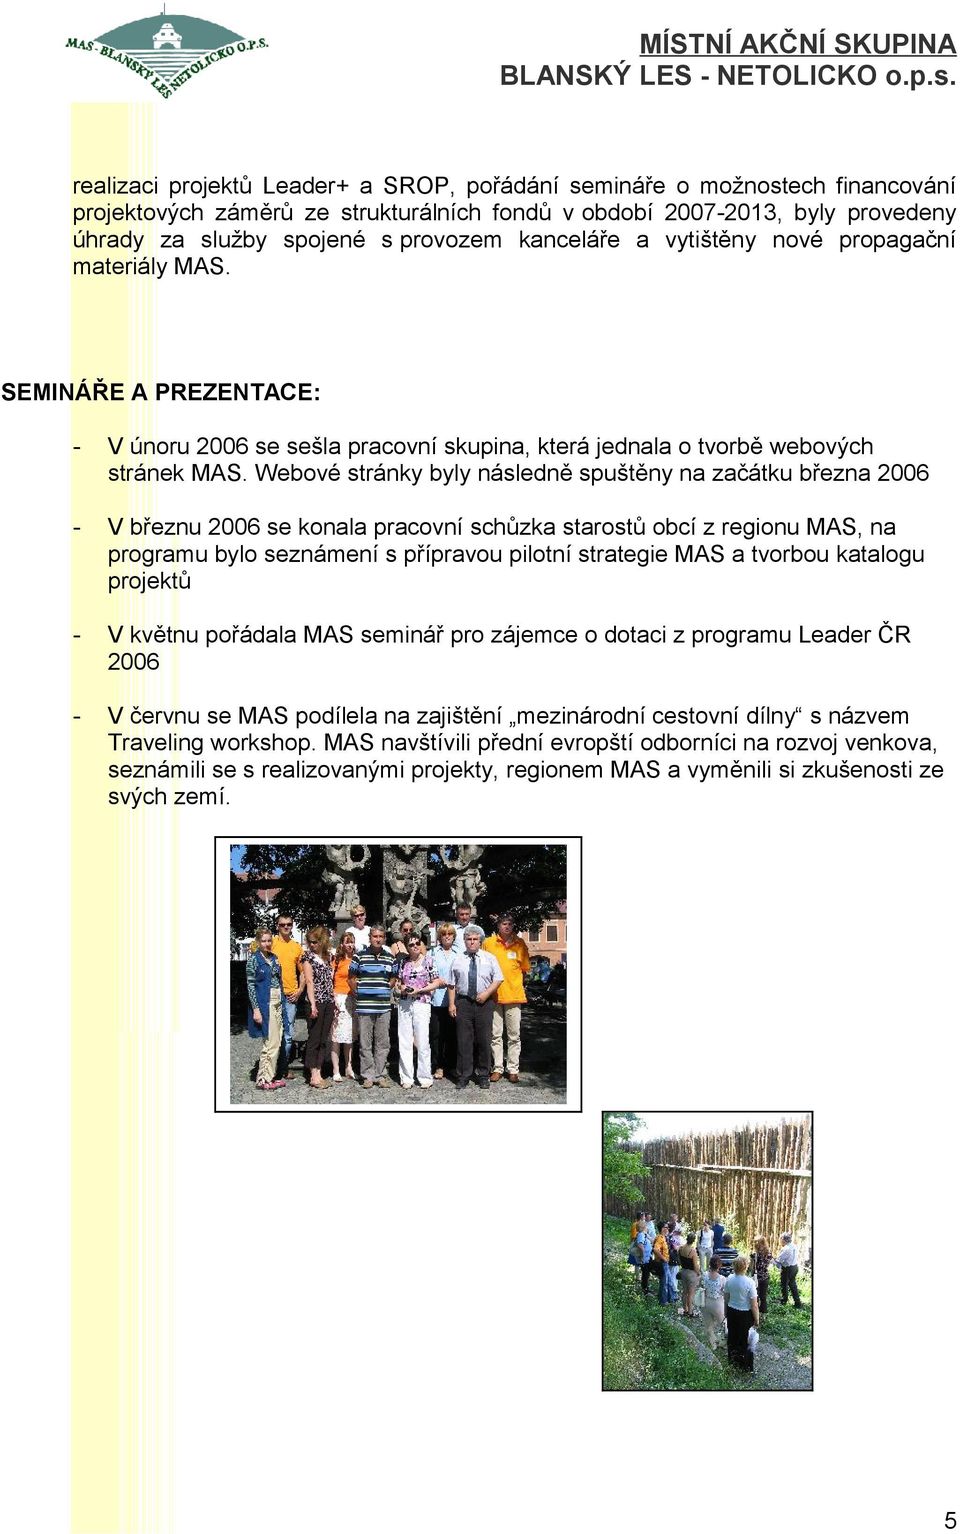 Webové stránky byly následně spuštěny na začátku března 2006 - V březnu 2006 se konala pracovní schůzka starostů obcí z regionu MAS, na programu bylo seznámení s přípravou pilotní strategie MAS a